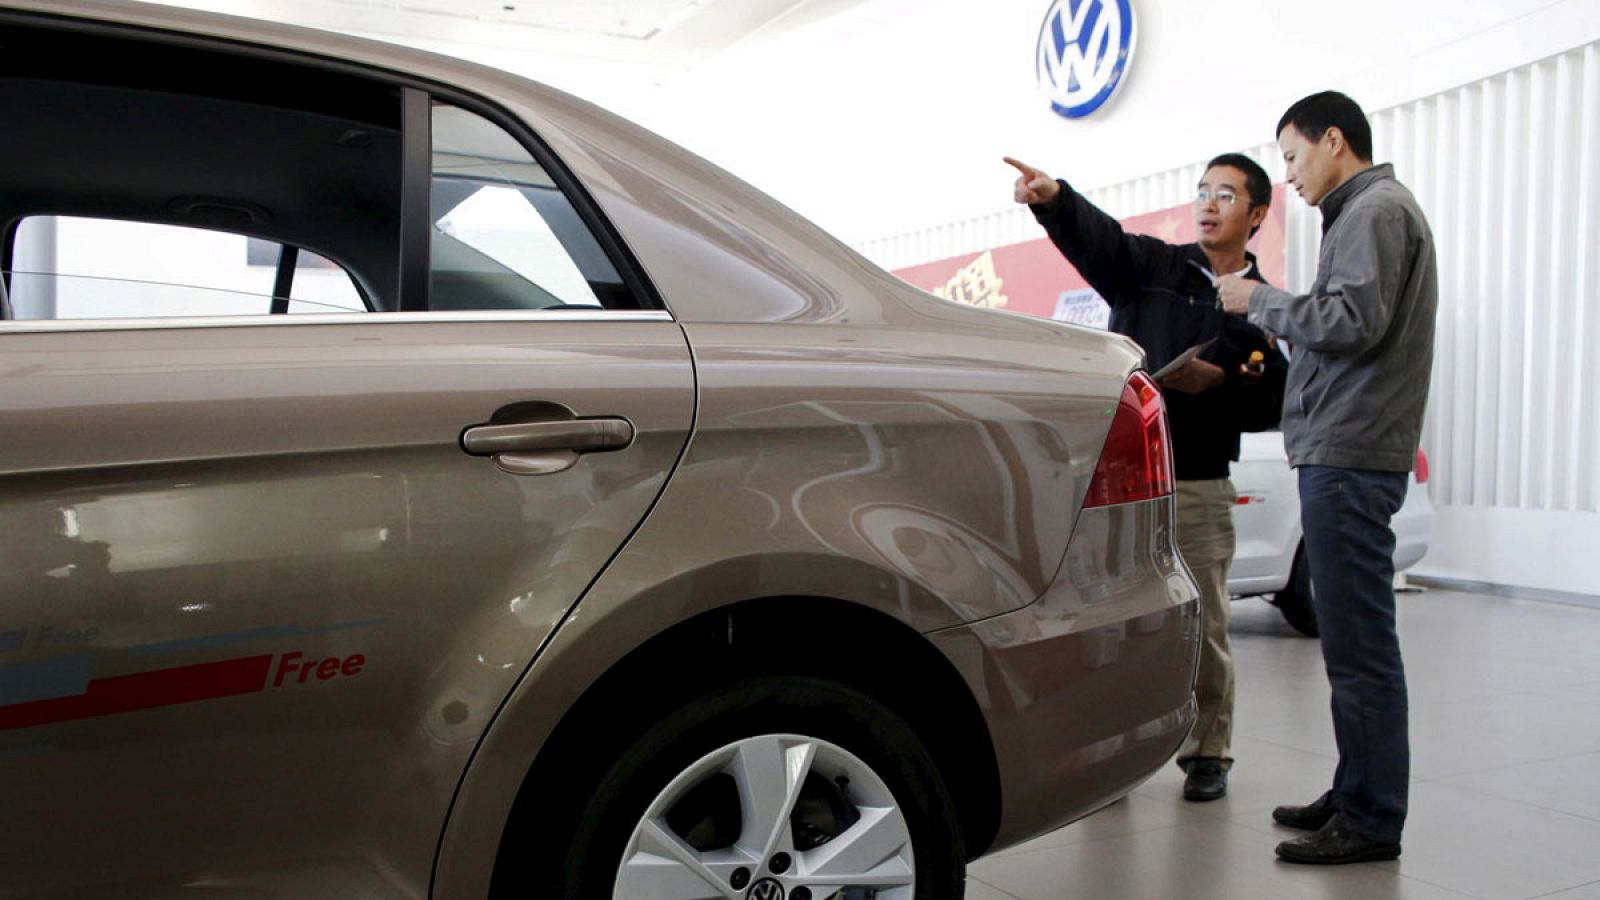 Las ventas de Volkswagen empiezan a resentirse en Asia por el escándalo de la manipulación de motores.